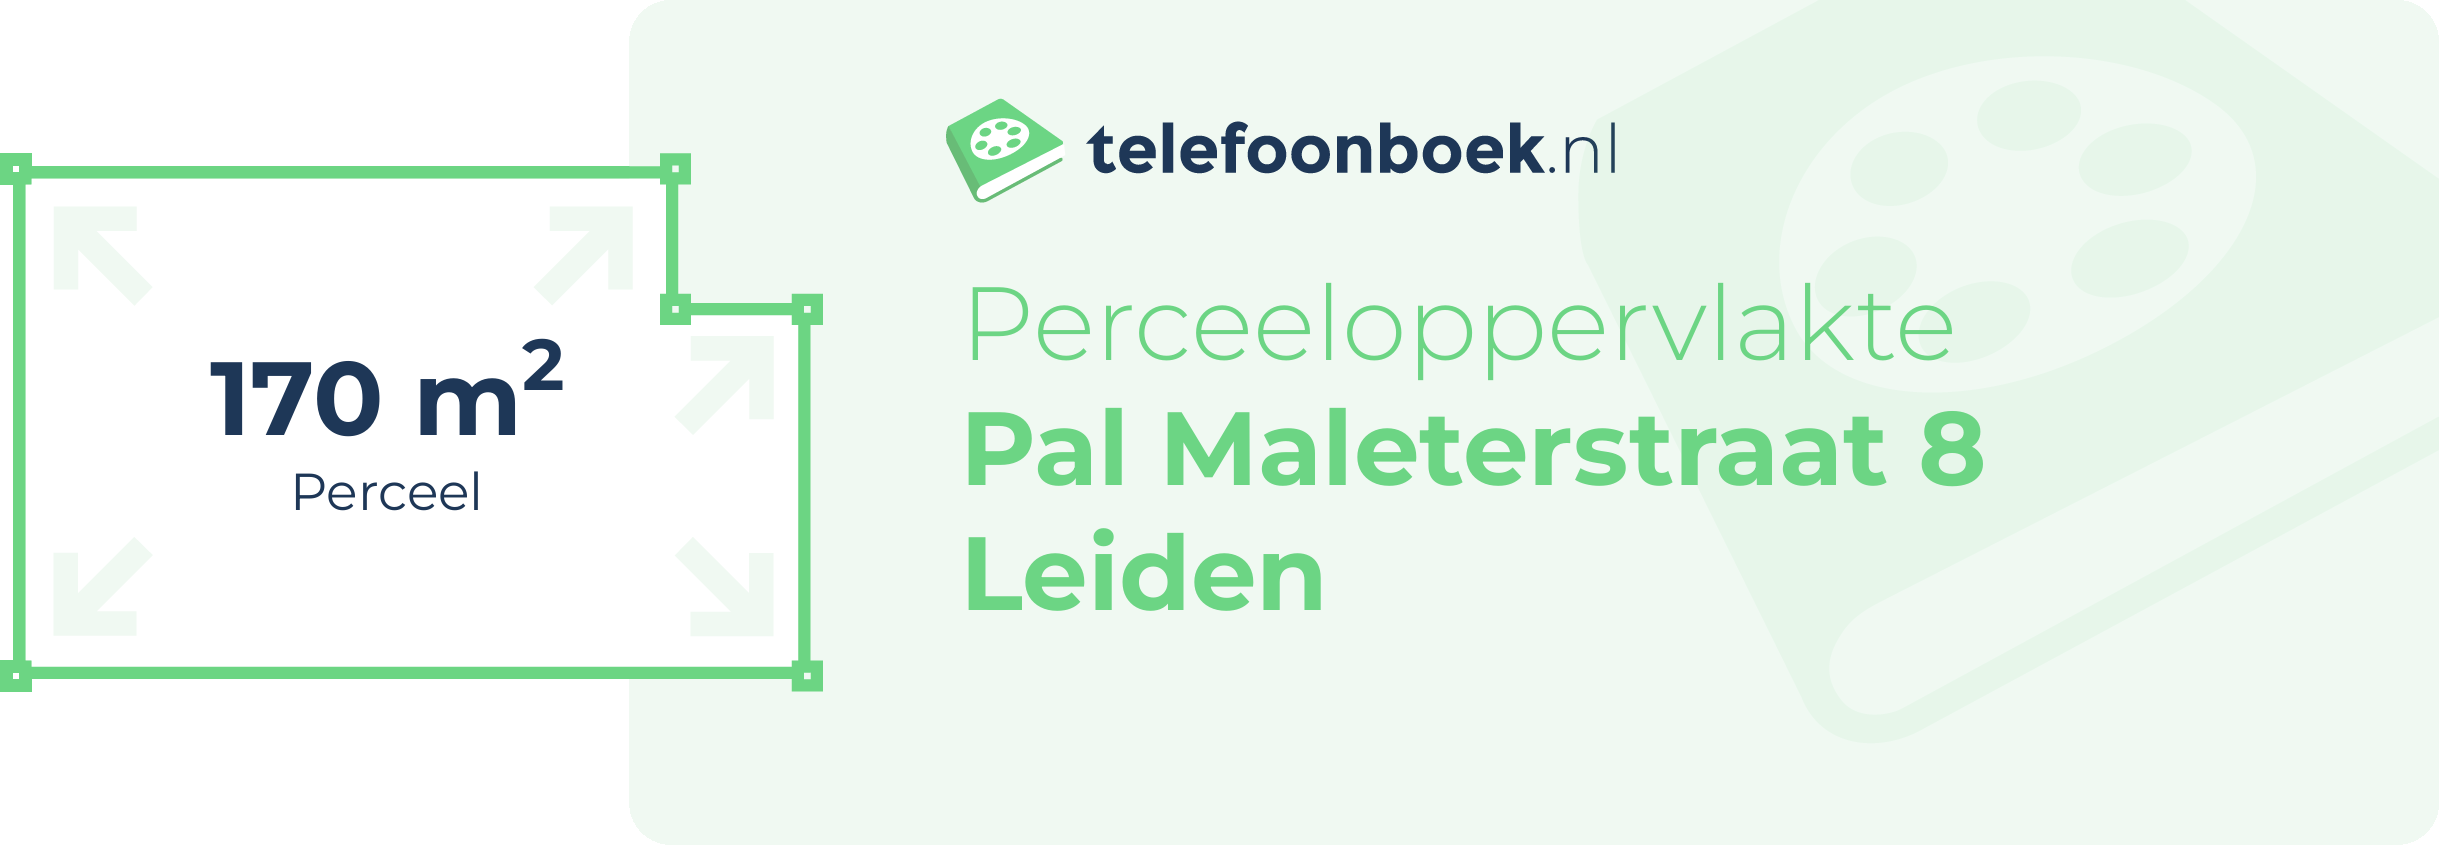 Perceeloppervlakte Pal Maleterstraat 8 Leiden